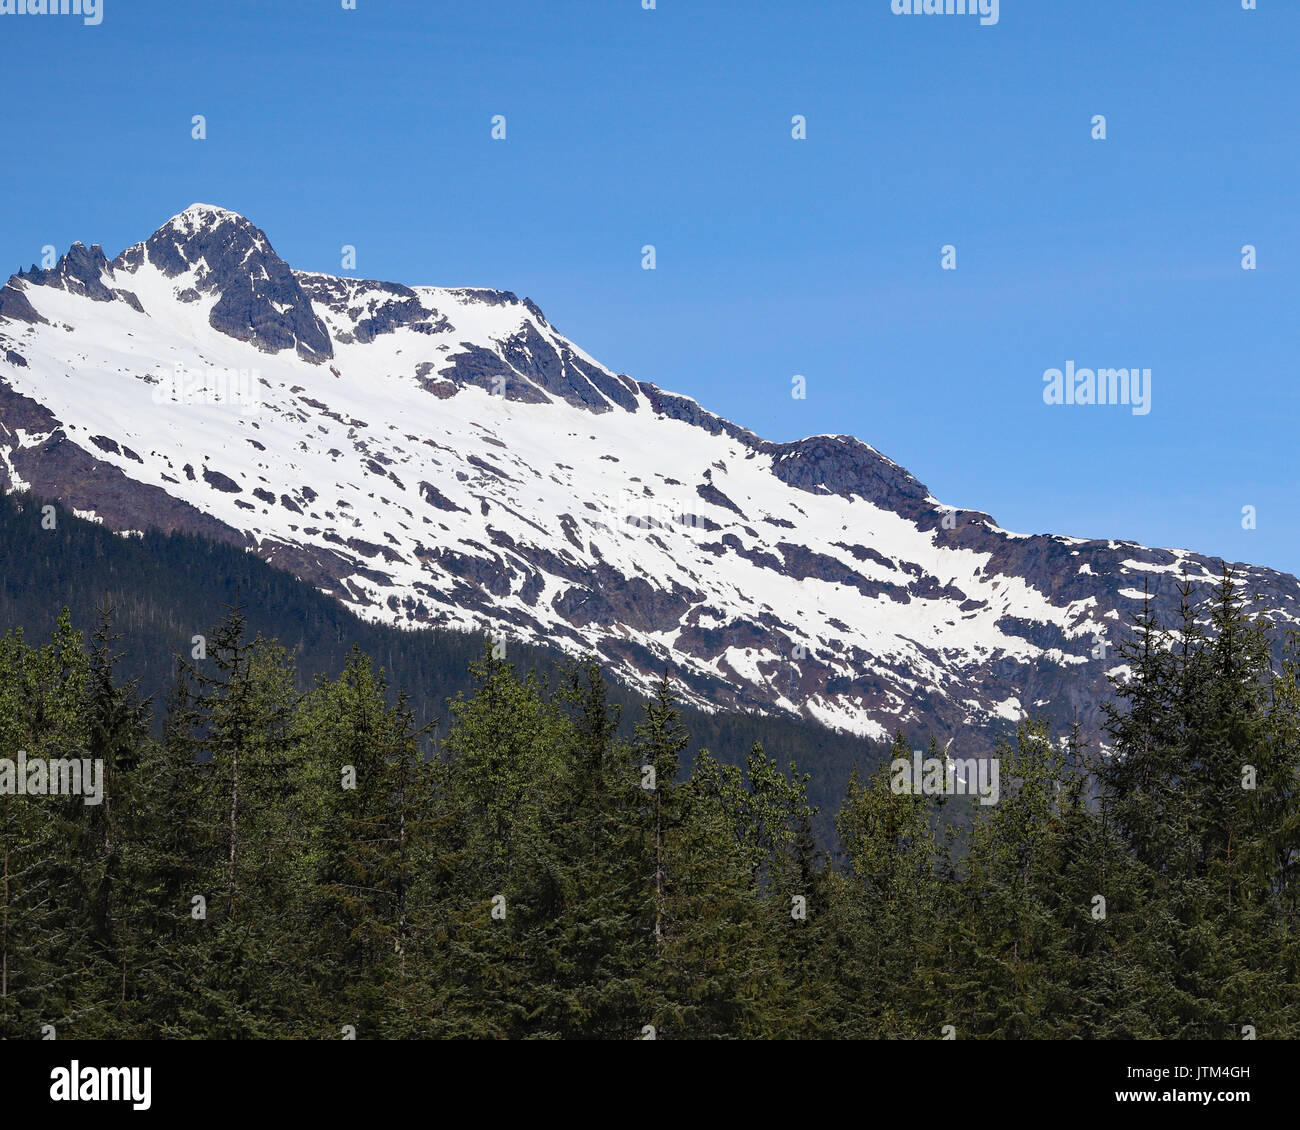 Mountain view through pine trees Stock Photo